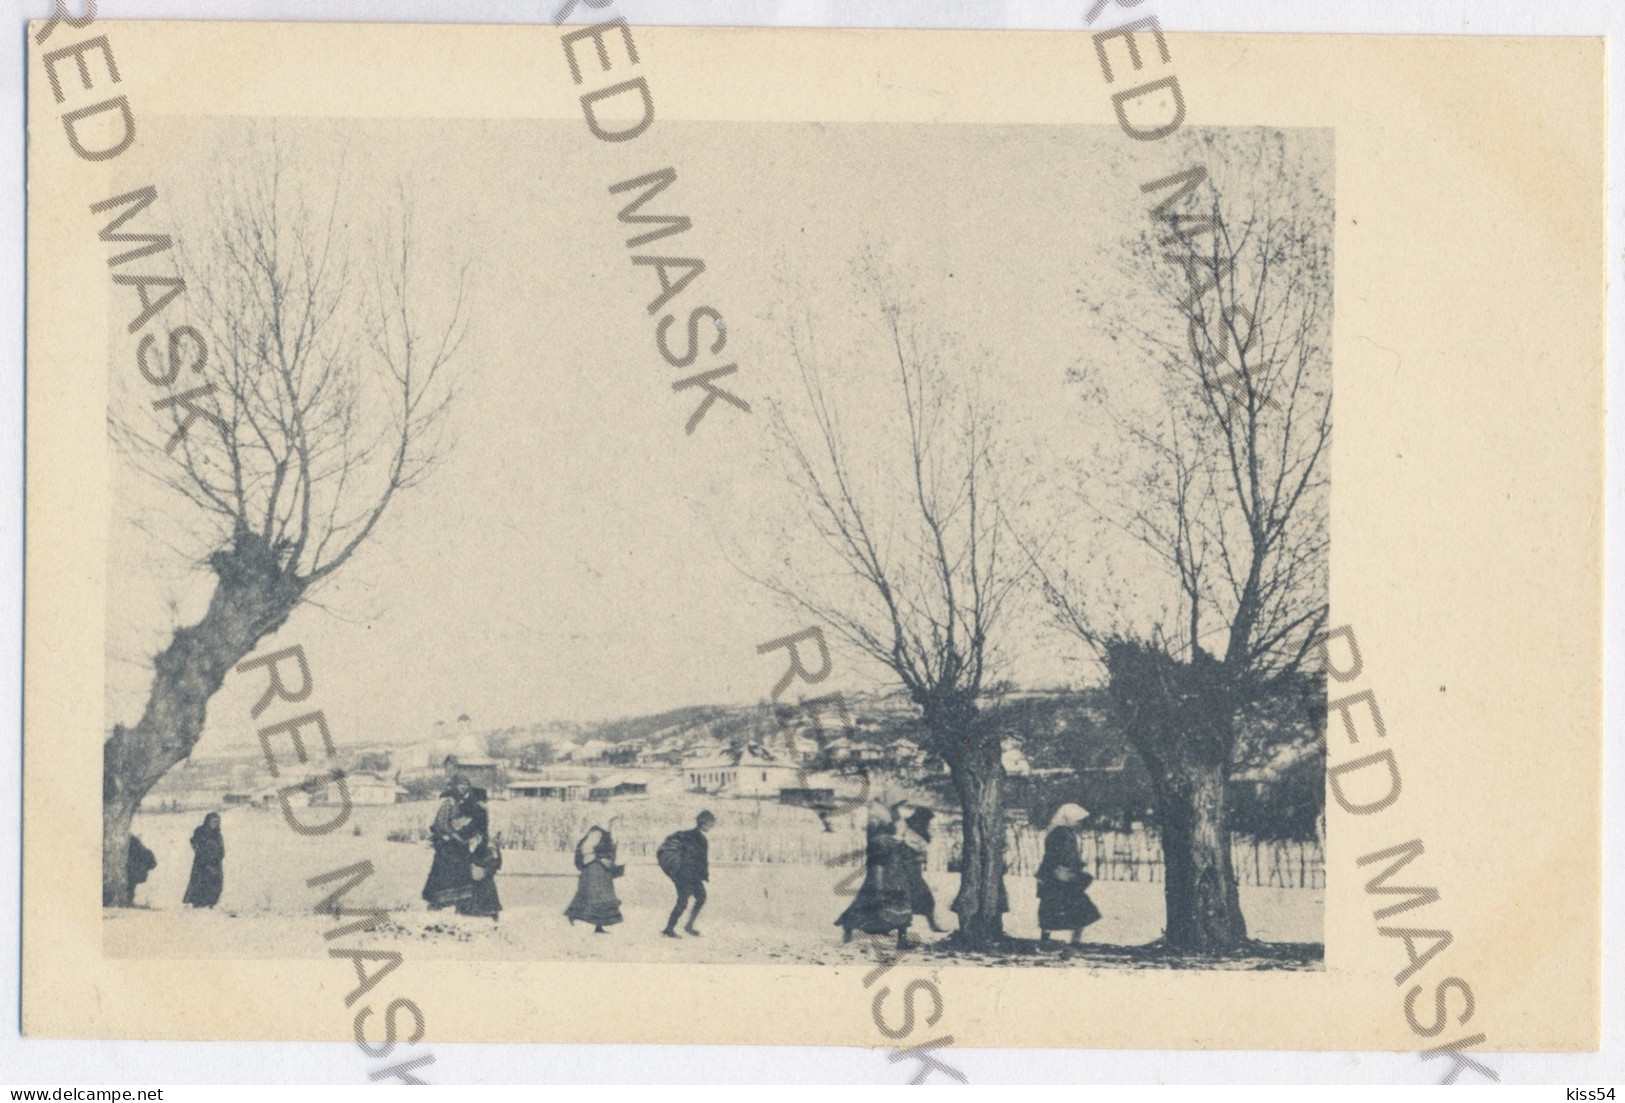 RO 84 - 11505 VLASCA, Teleorman, Serb Refugees, Romania - Old Postcard - Unused - Romania